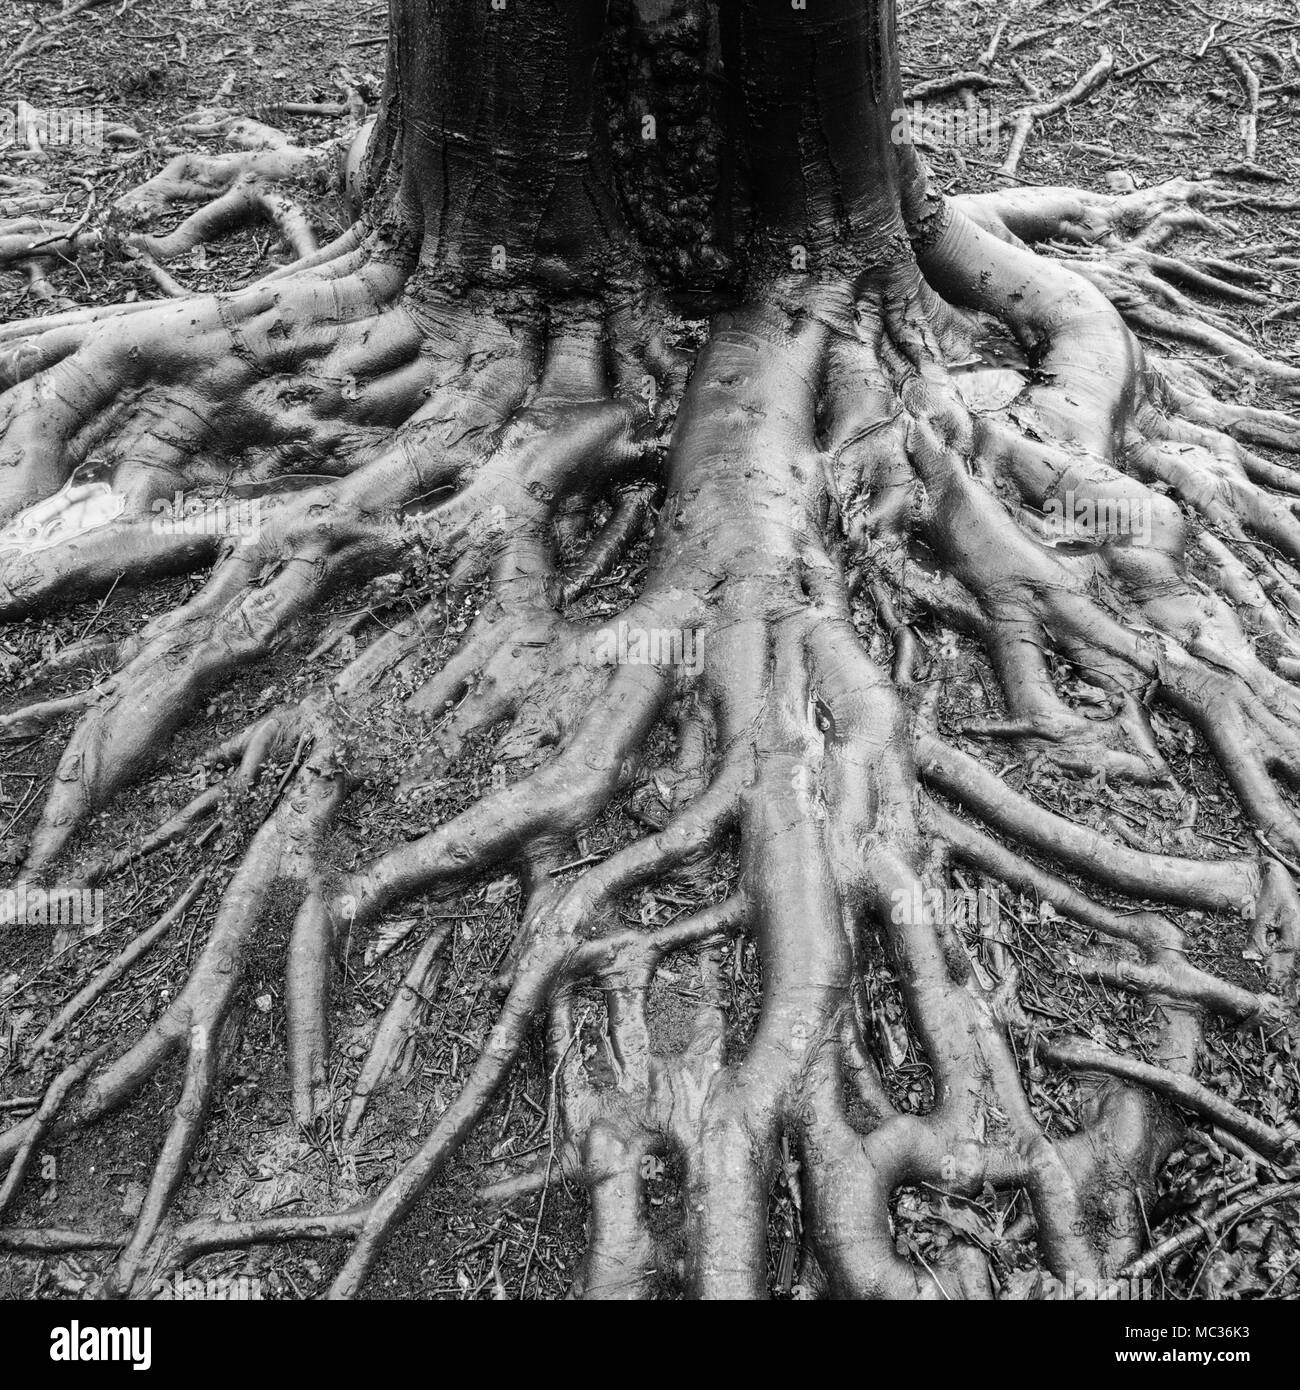 Il fondo di un faggio tronco di albero che intrecciano radici di albero, bagnato dalla pioggia recente, divaricamento verso il visualizzatore Foto Stock